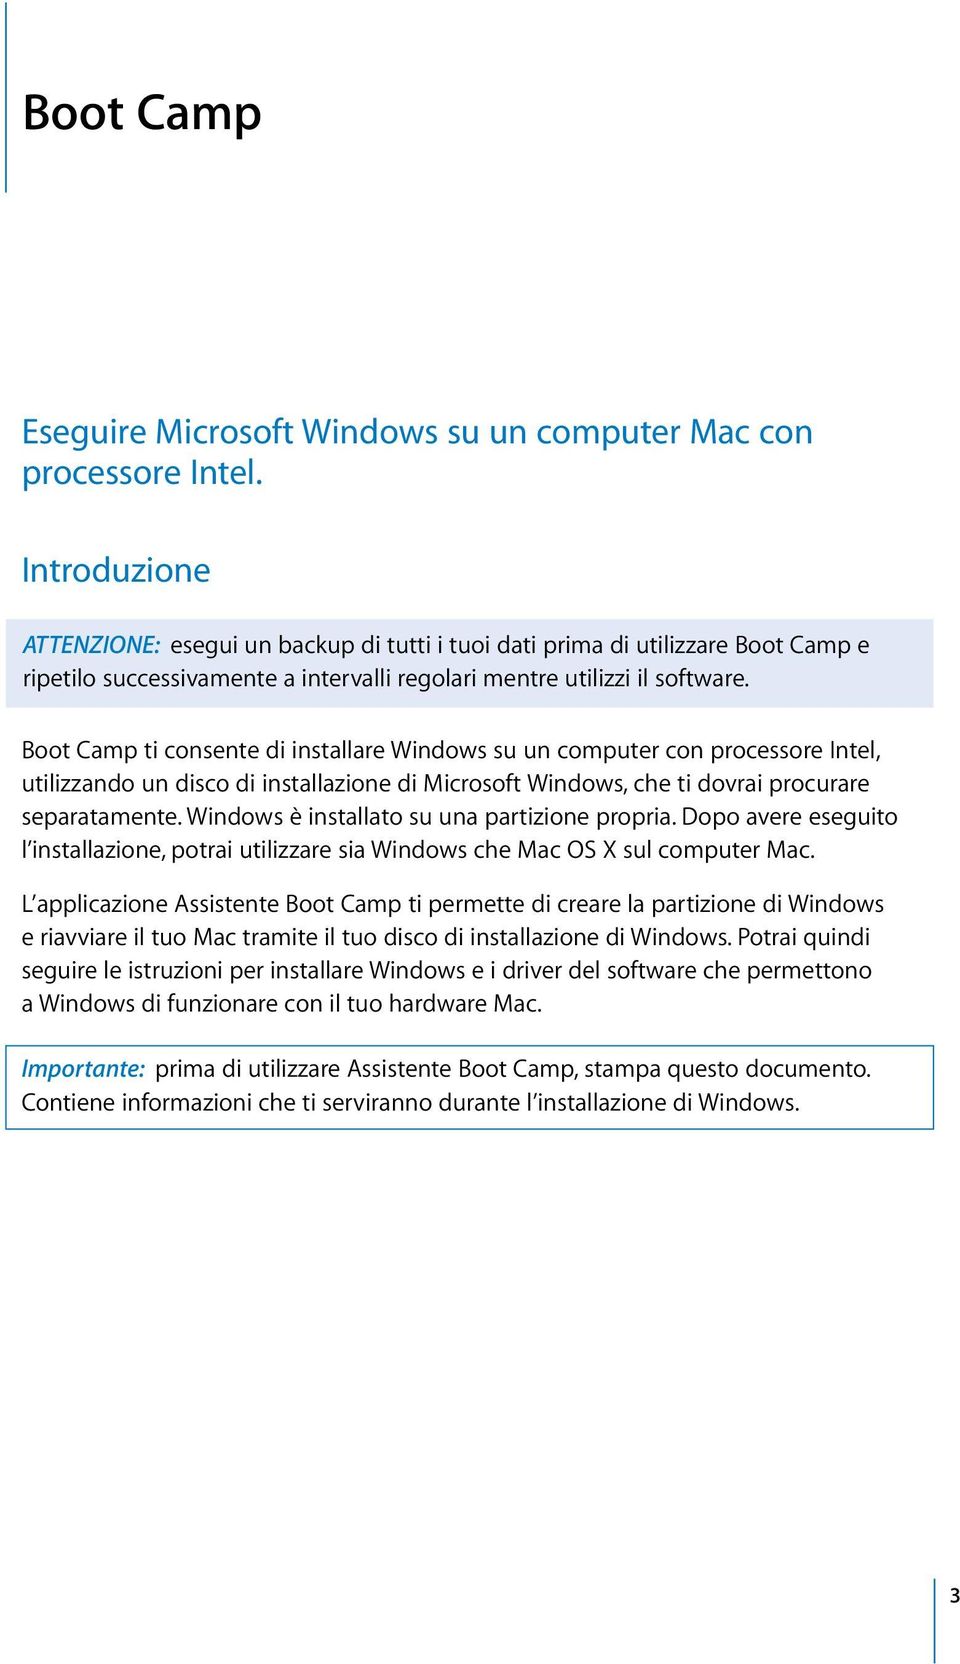 Boot Camp ti consente di installare Windows su un computer con processore Intel, utilizzando un disco di installazione di Microsoft Windows, che ti dovrai procurare separatamente.